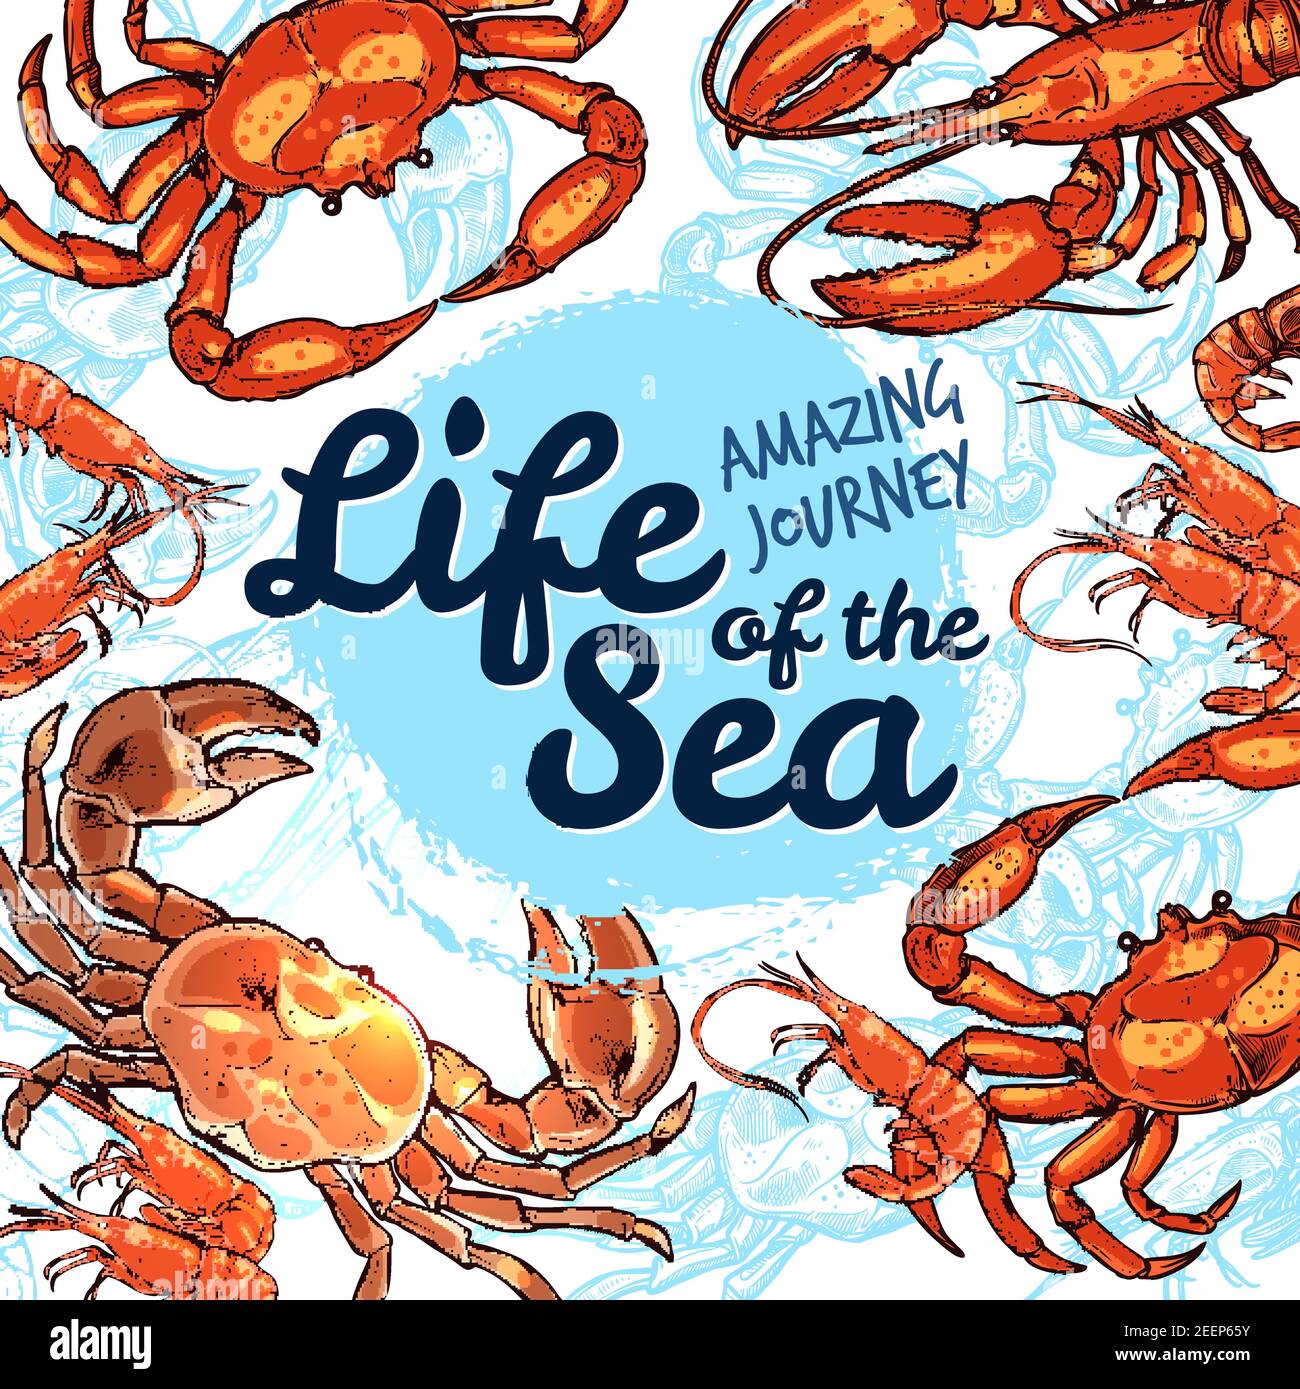 Sea Life erstaunliche Reise Poster für Angeln oder Ozeanarium Unterwassertour. Vektor Skizze Design von Hummerkrabben oder Krebstiere Tiere, Garnelen Garnelen Stock Vektor